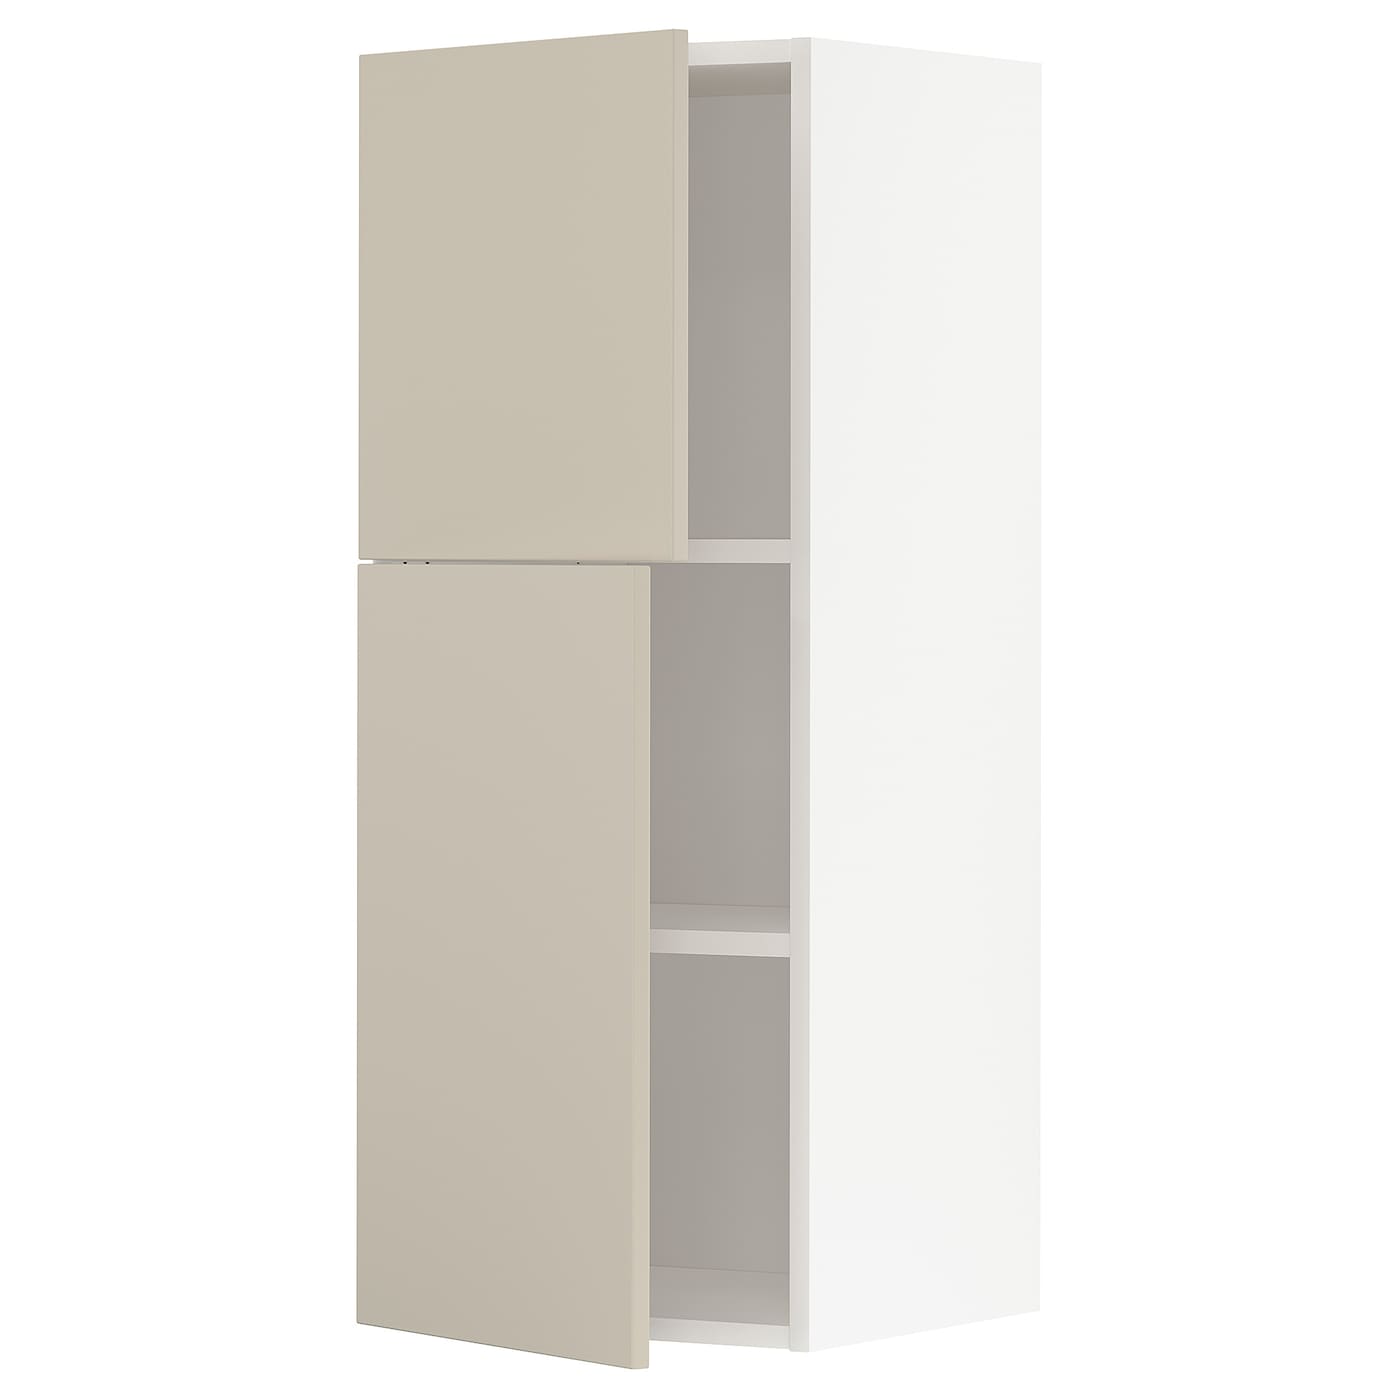 Навесной шкаф с полкой - METOD IKEA/ МЕТОД ИКЕА, 100х40 см, белый/бежевый